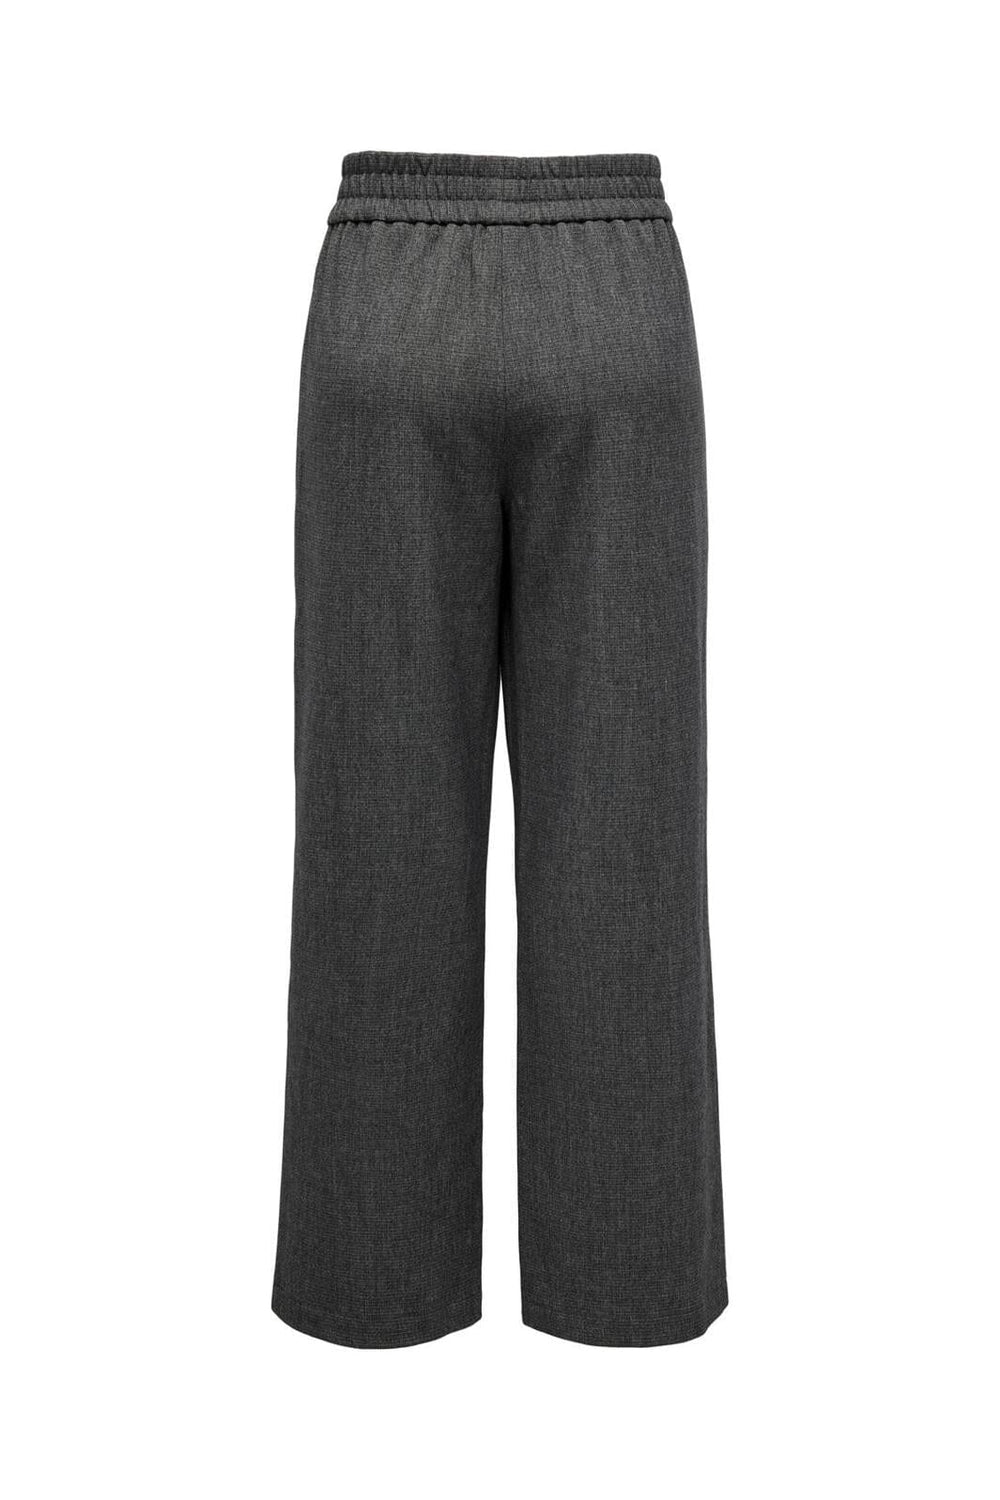 Only - Onlelise Wide Pull-Up Pant Tlr - 4509769 Dark Grey Melange